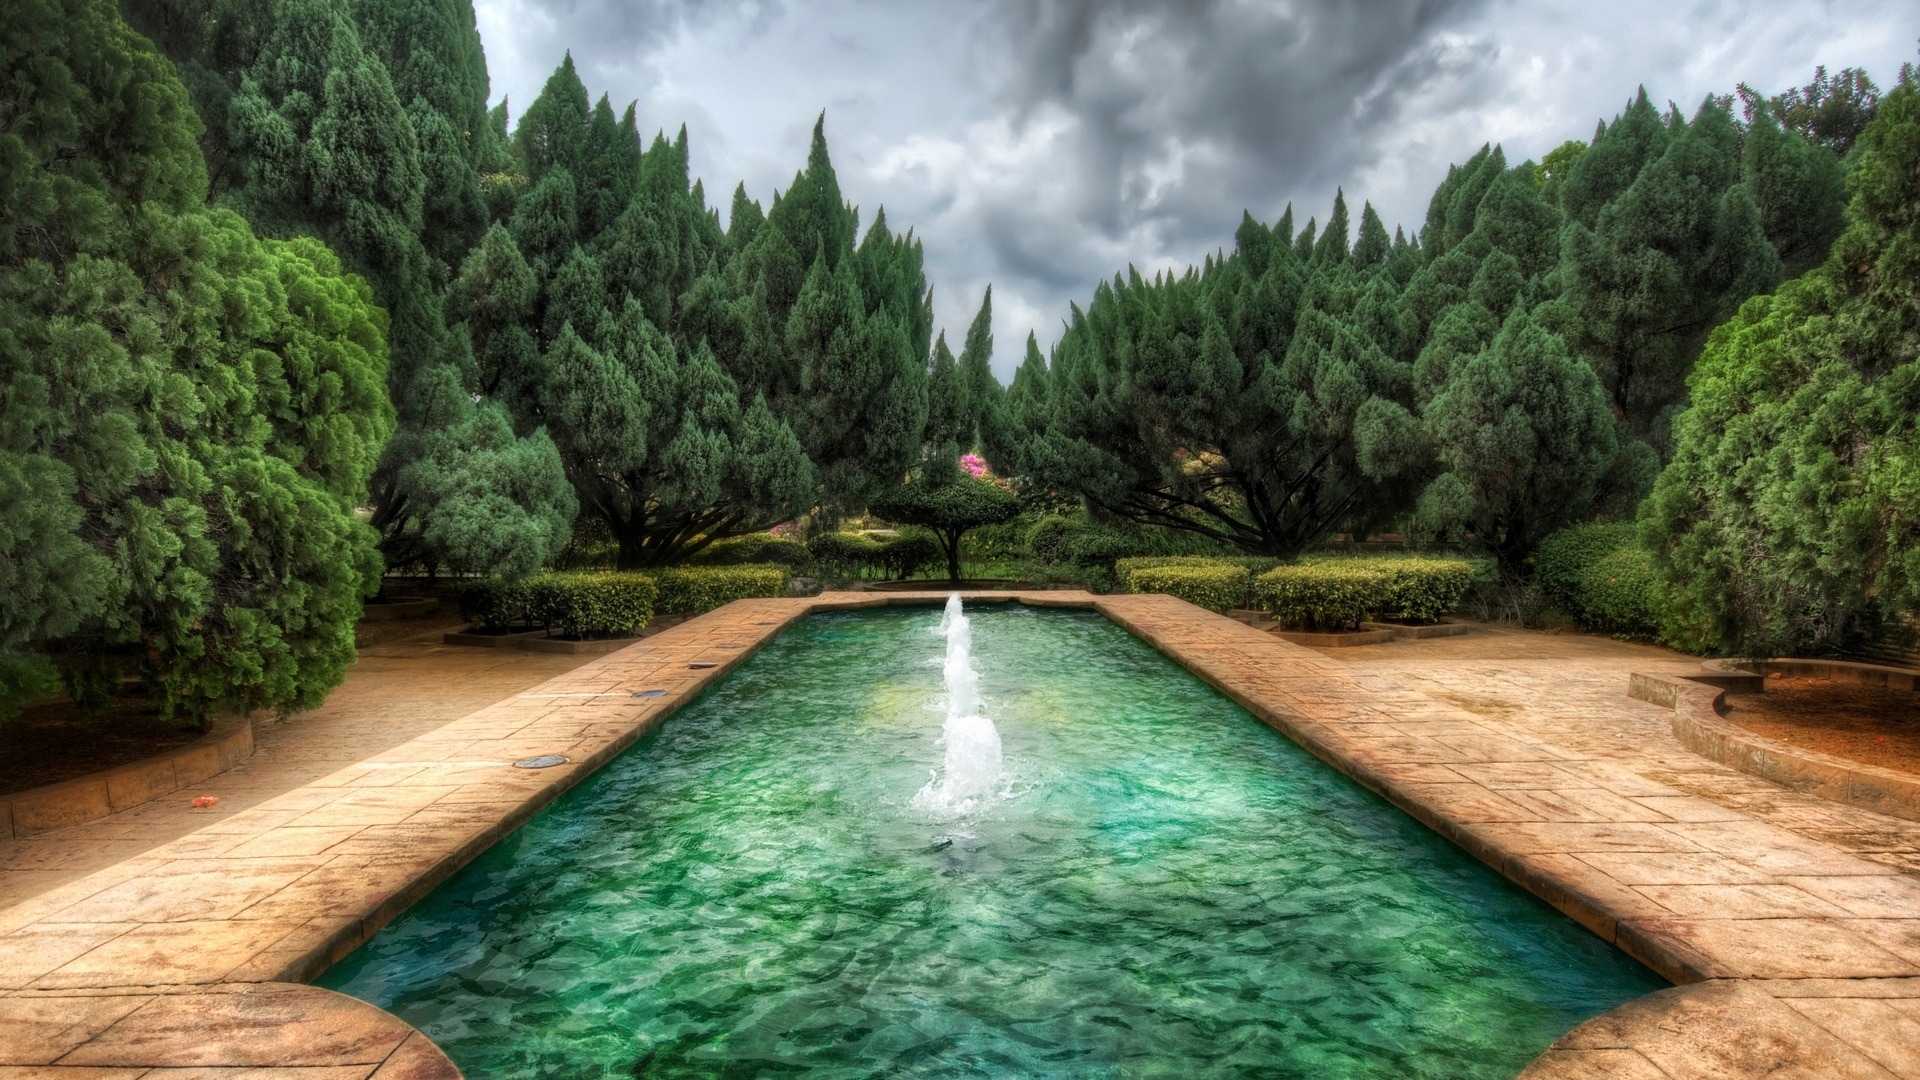 Download mobile wallpaper Landscape for free.